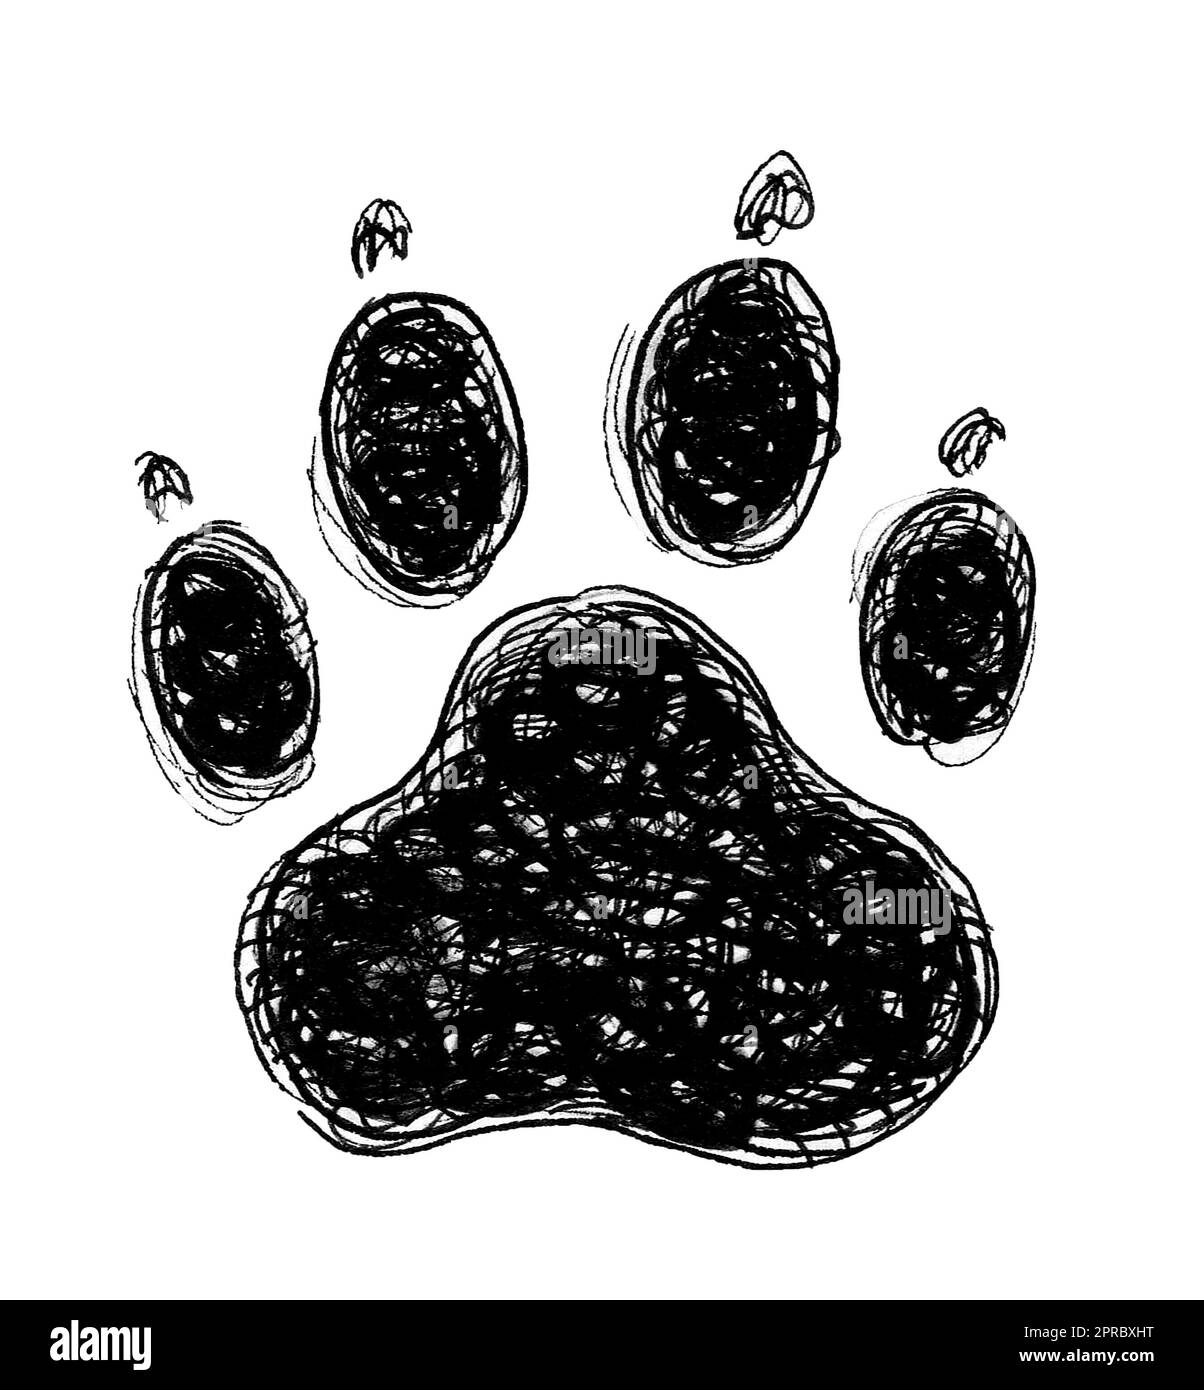 Panther Paws drawing free image download